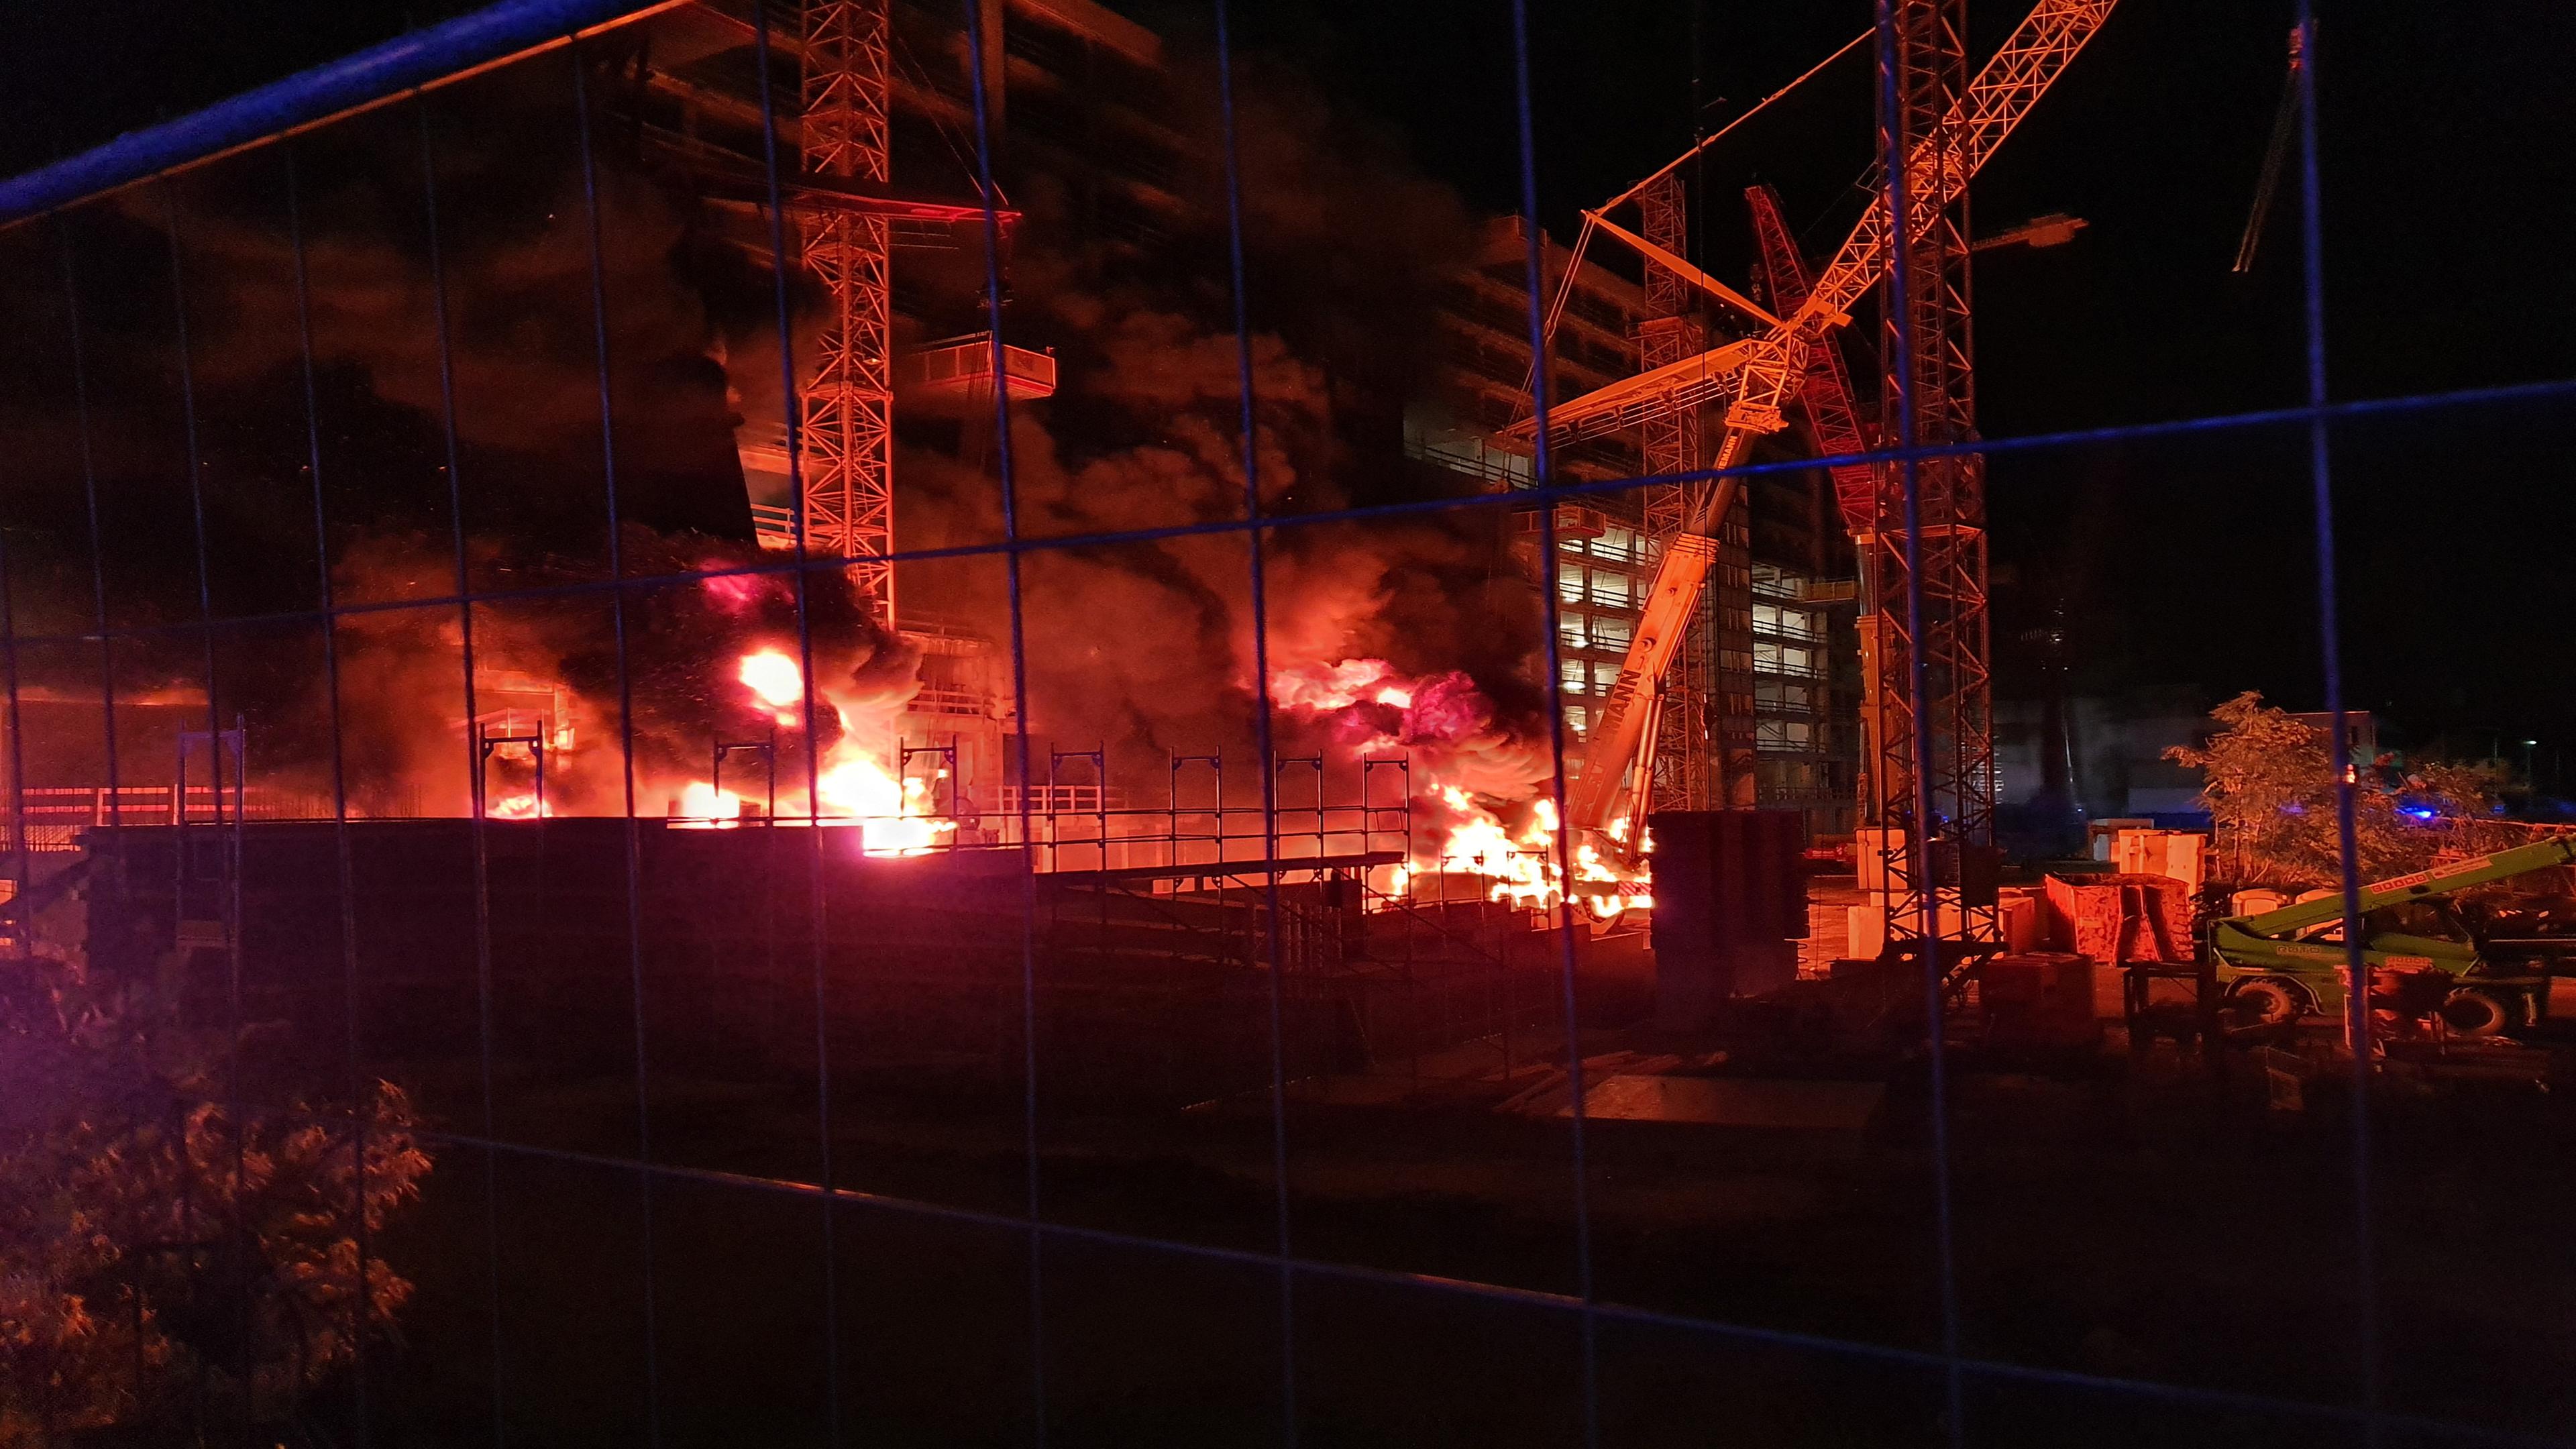 "Albtraum Wohnen": Blick durch den Bauzaun auf eine nächtliche Baustelle. An zwei Stellen stehen Maschinen in Brand.